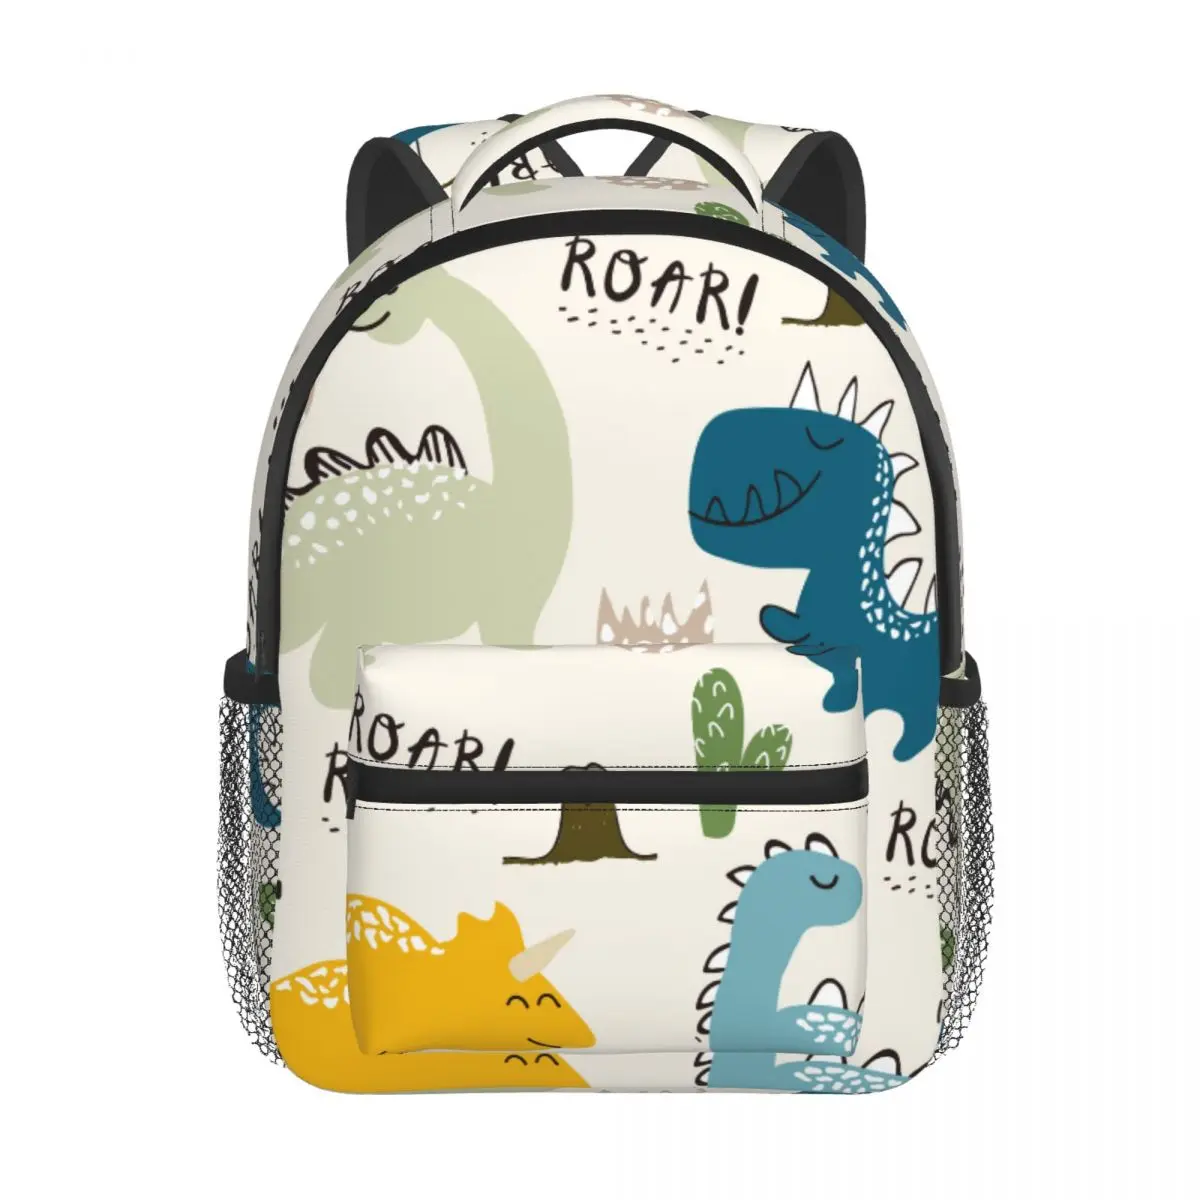 Cartoon Dinosaur With Roar Baby Backpack Kindergarten Schoolbag Kids Children School Bag